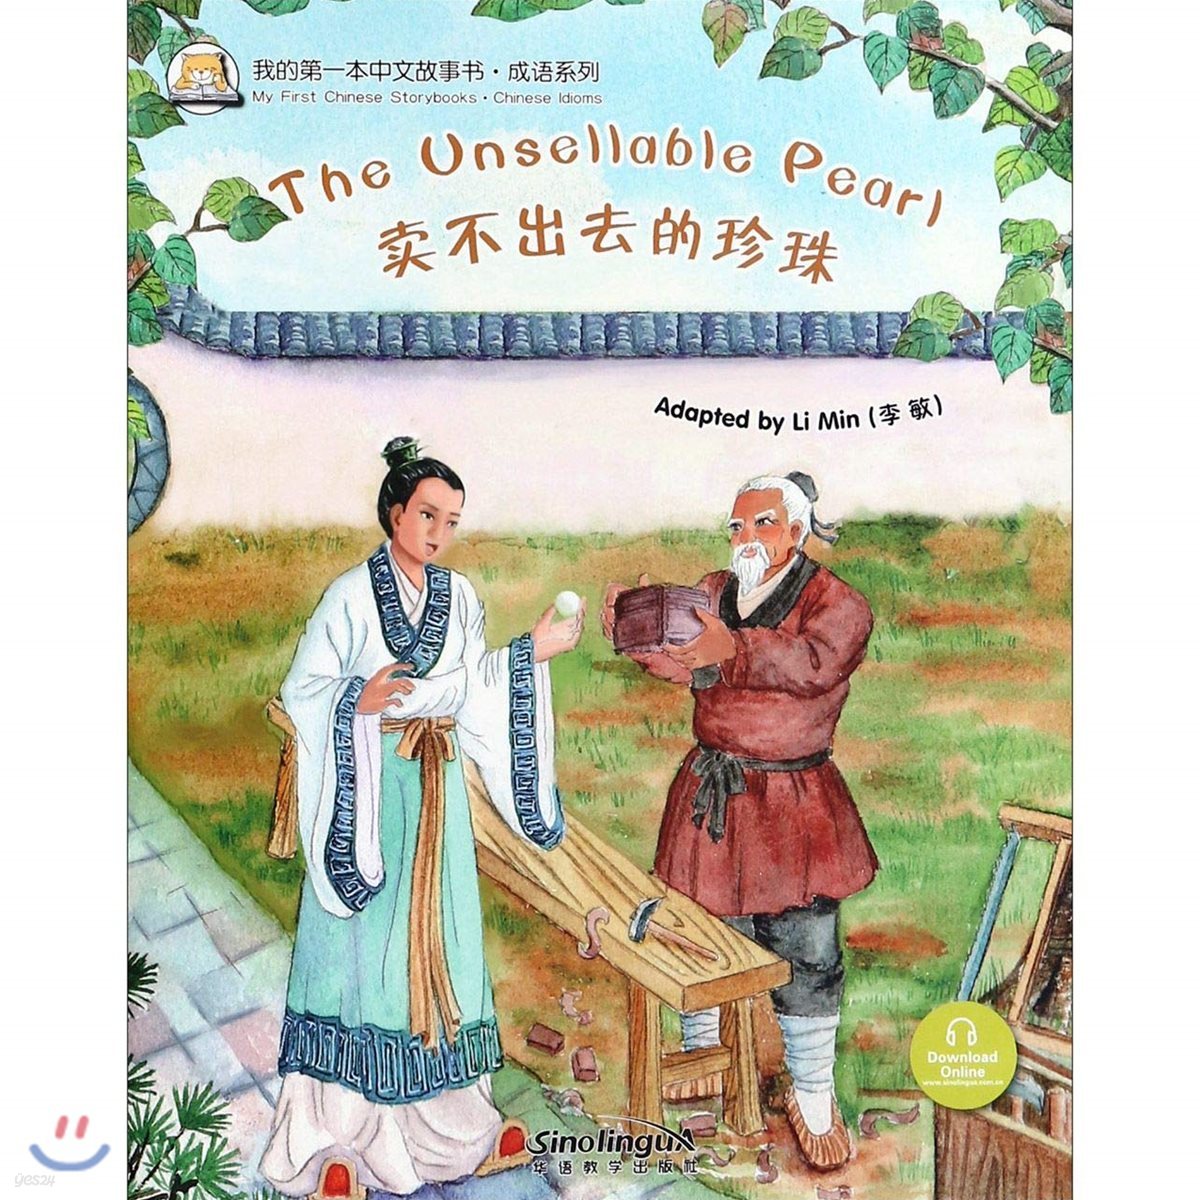 我的第一本中文故事?&#183;成?系列 : ?不出去的珍珠 아적제일본중문고사서&#183;성어계열 : 매부출거적진주 My First Chinese Storybooks &#183; Chinese Idioms : The Unsellable pearl